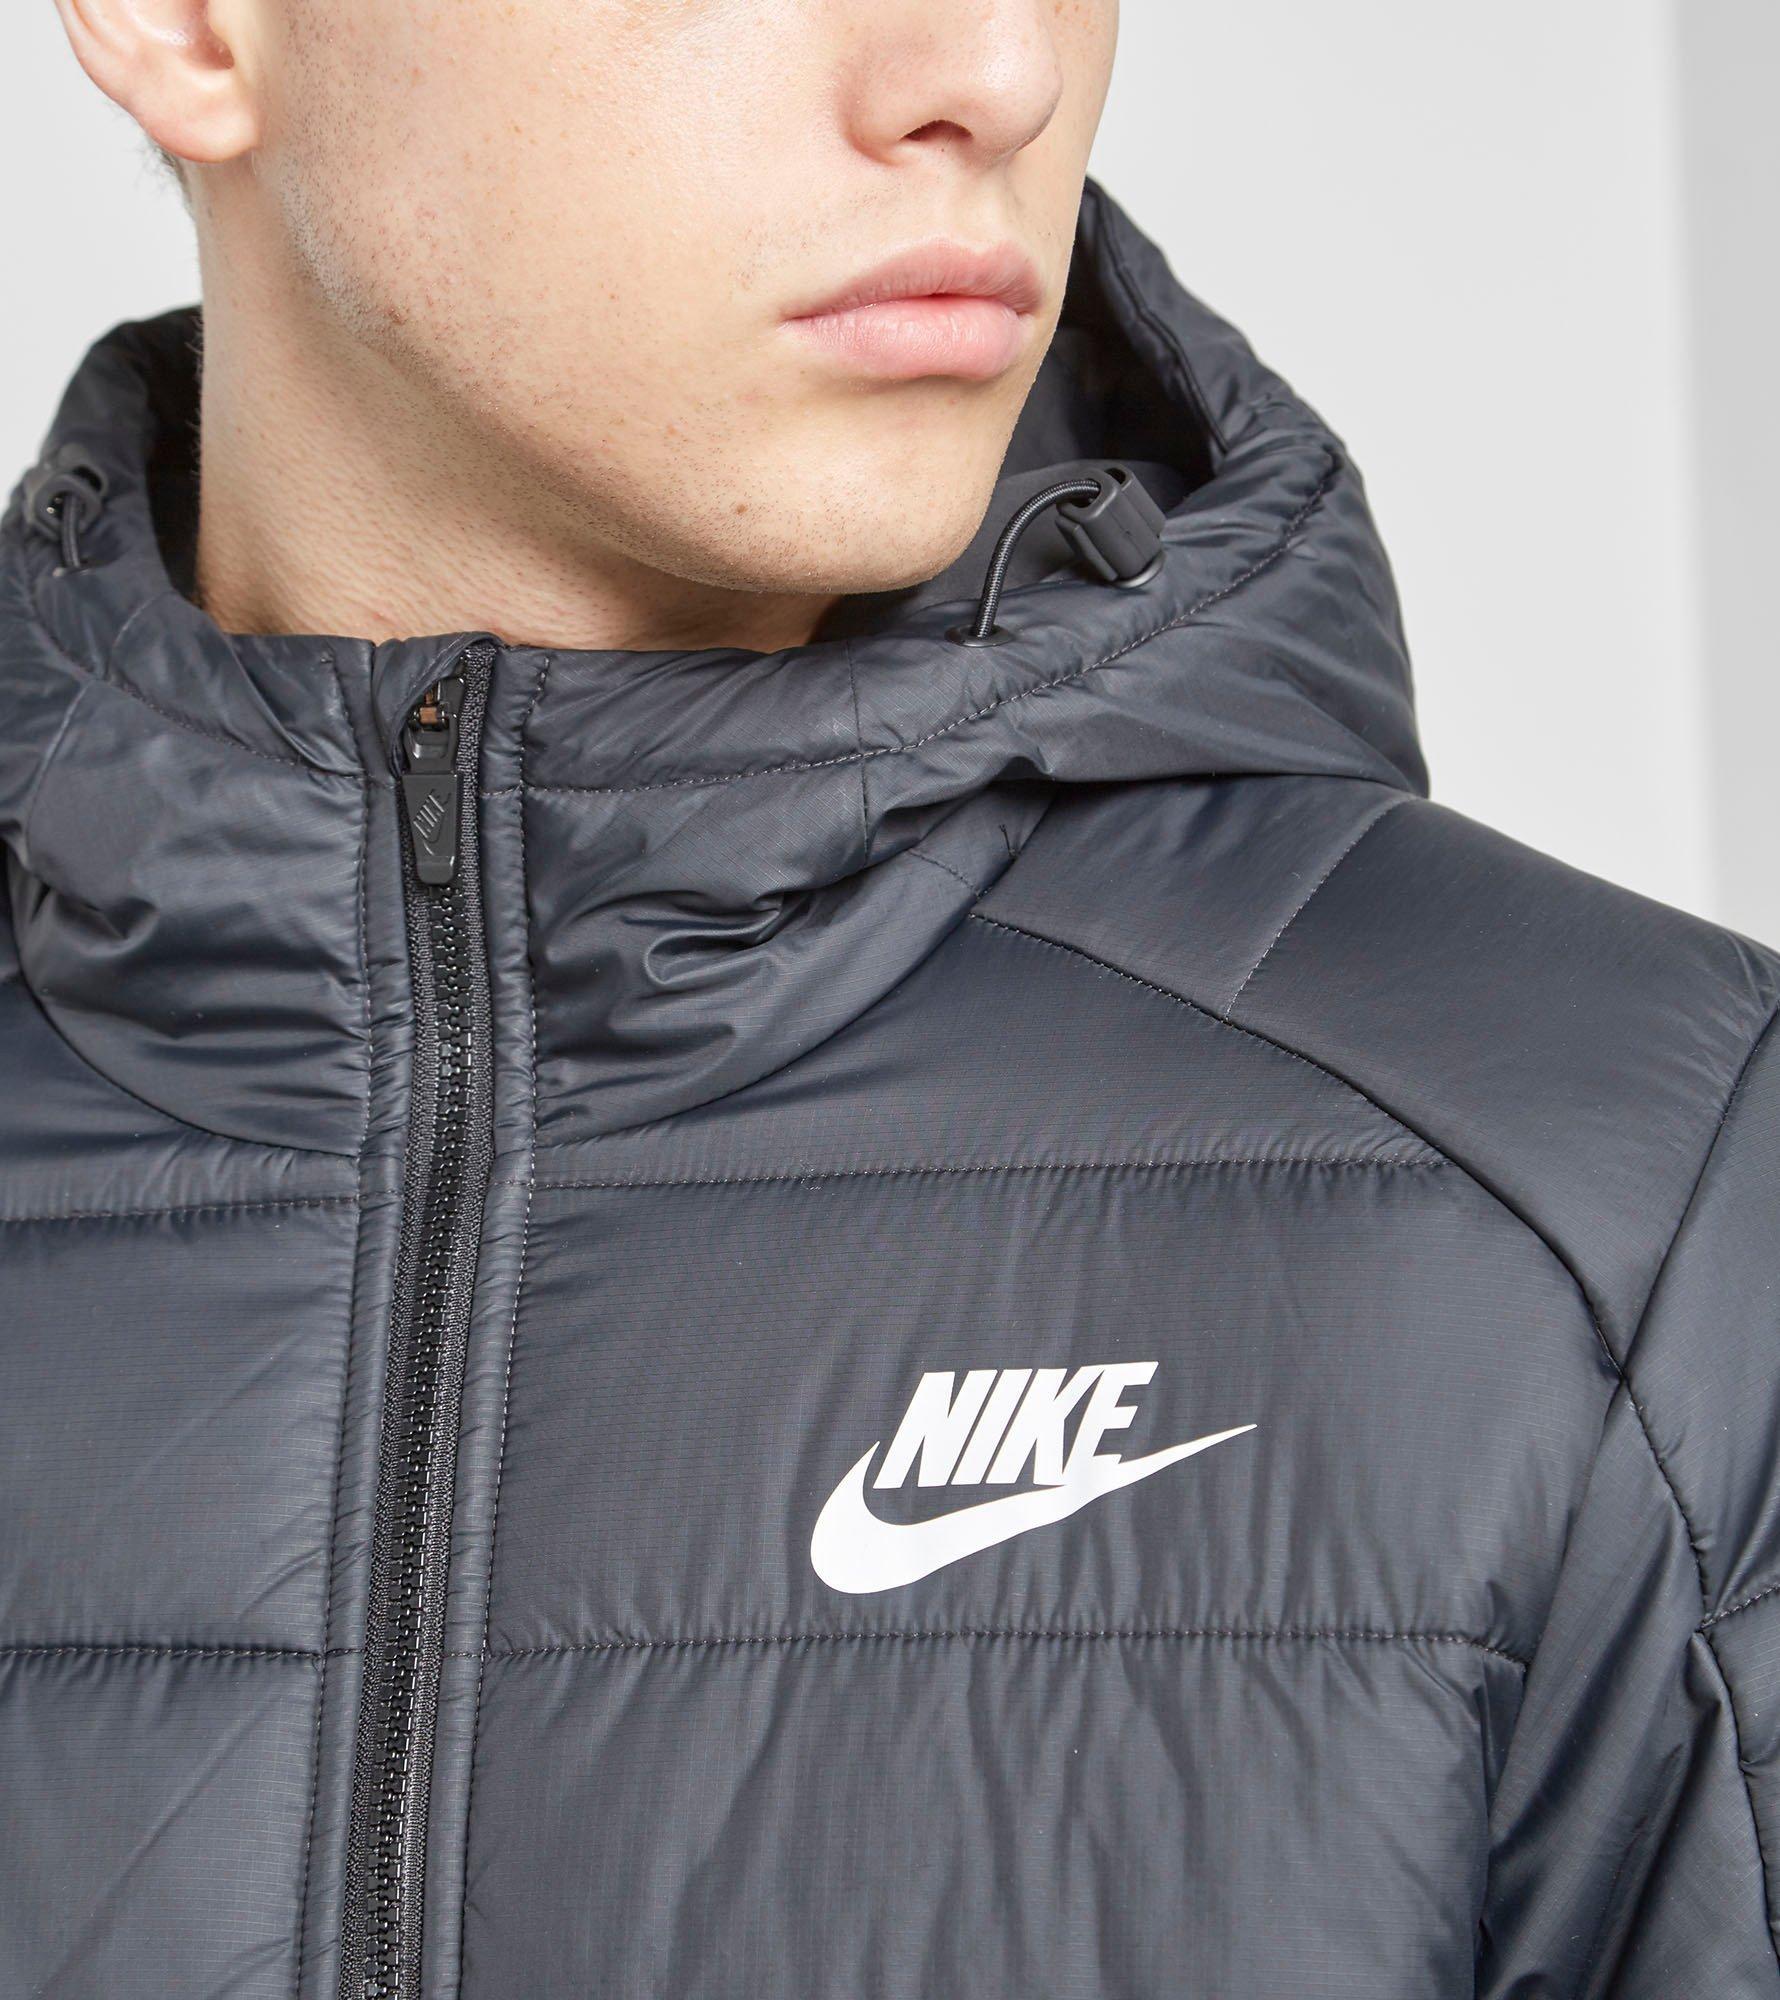 Lyst - Nike Bubble Jacket in Black for Men